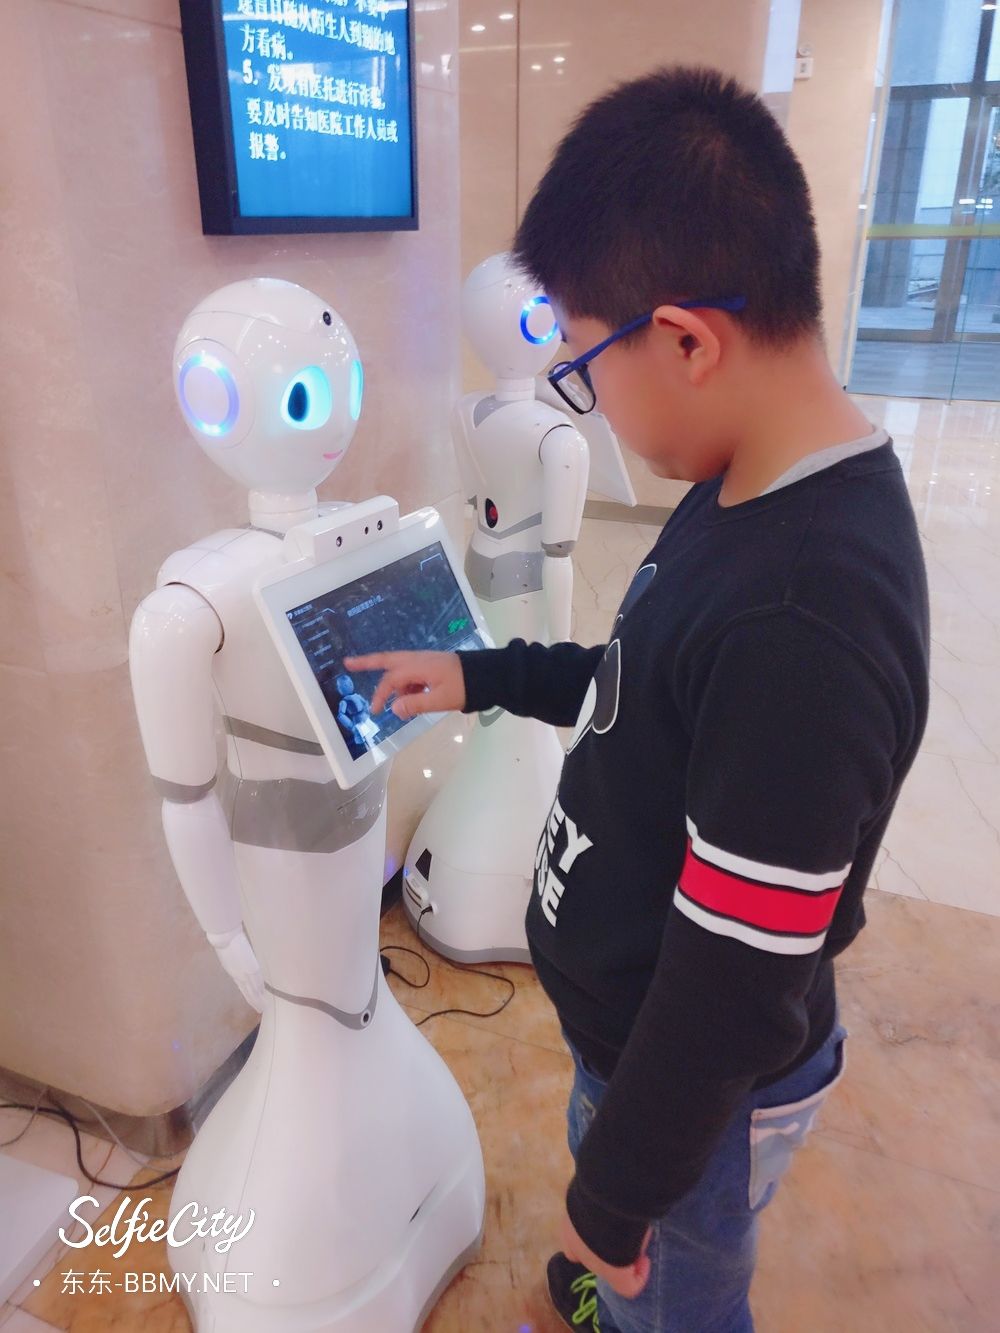 金东浩成长日记生病去医院发现机器人照片SelfieCity_20210922180826_org.jpg